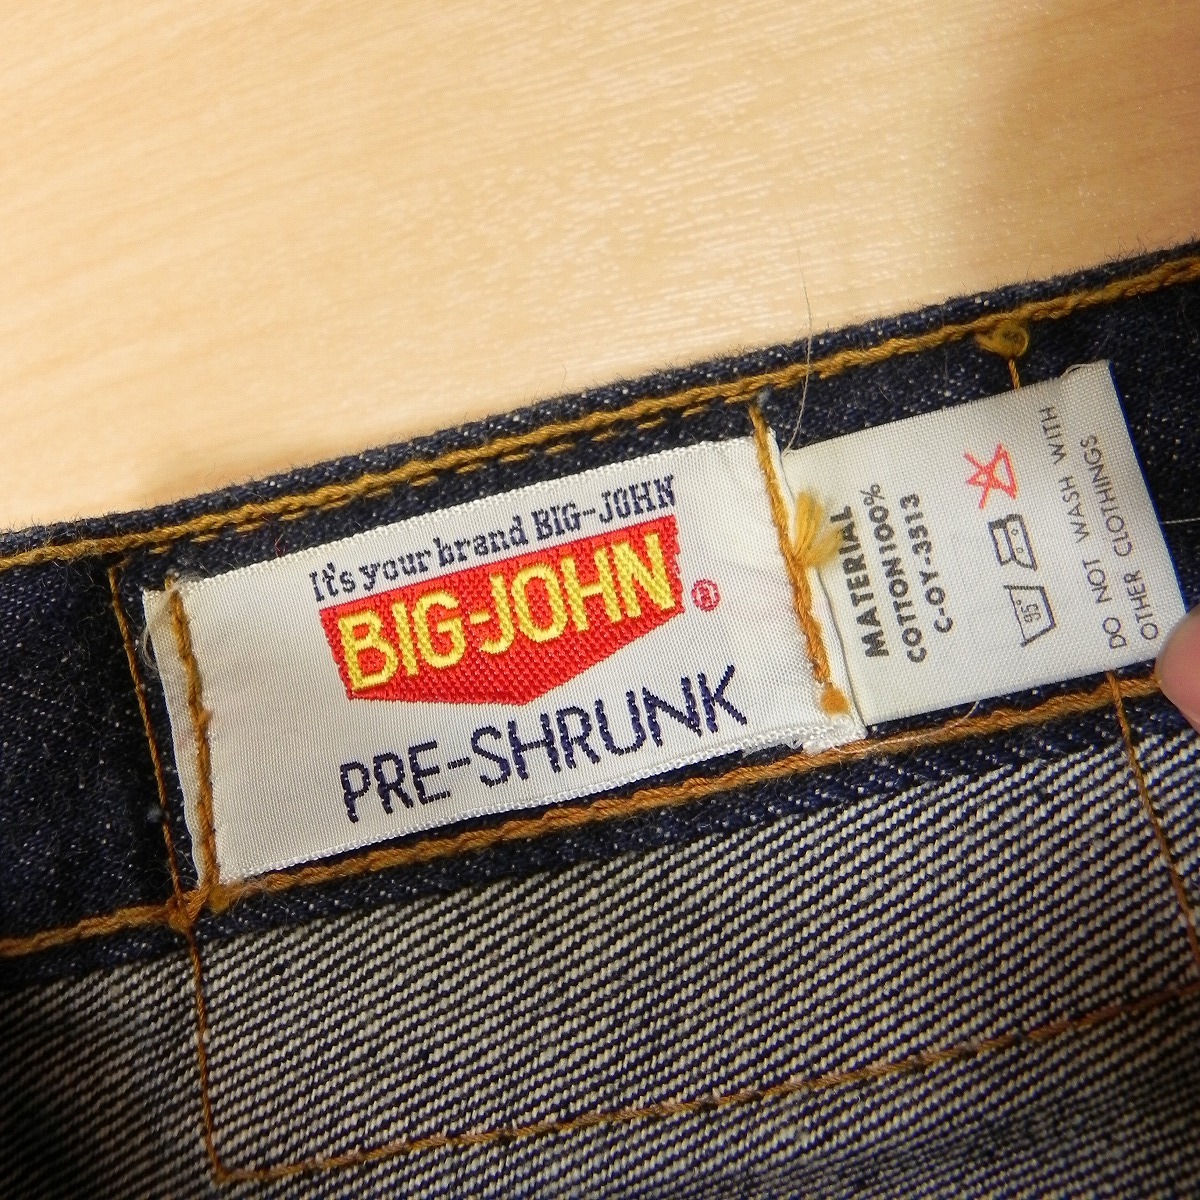 -627* редкий размер w40 * 60s 70s подлинная вещь Big John BIG JOHN Denim брюки джинсы ( местного производства Vintage ) б/у одежда ta long Zip *